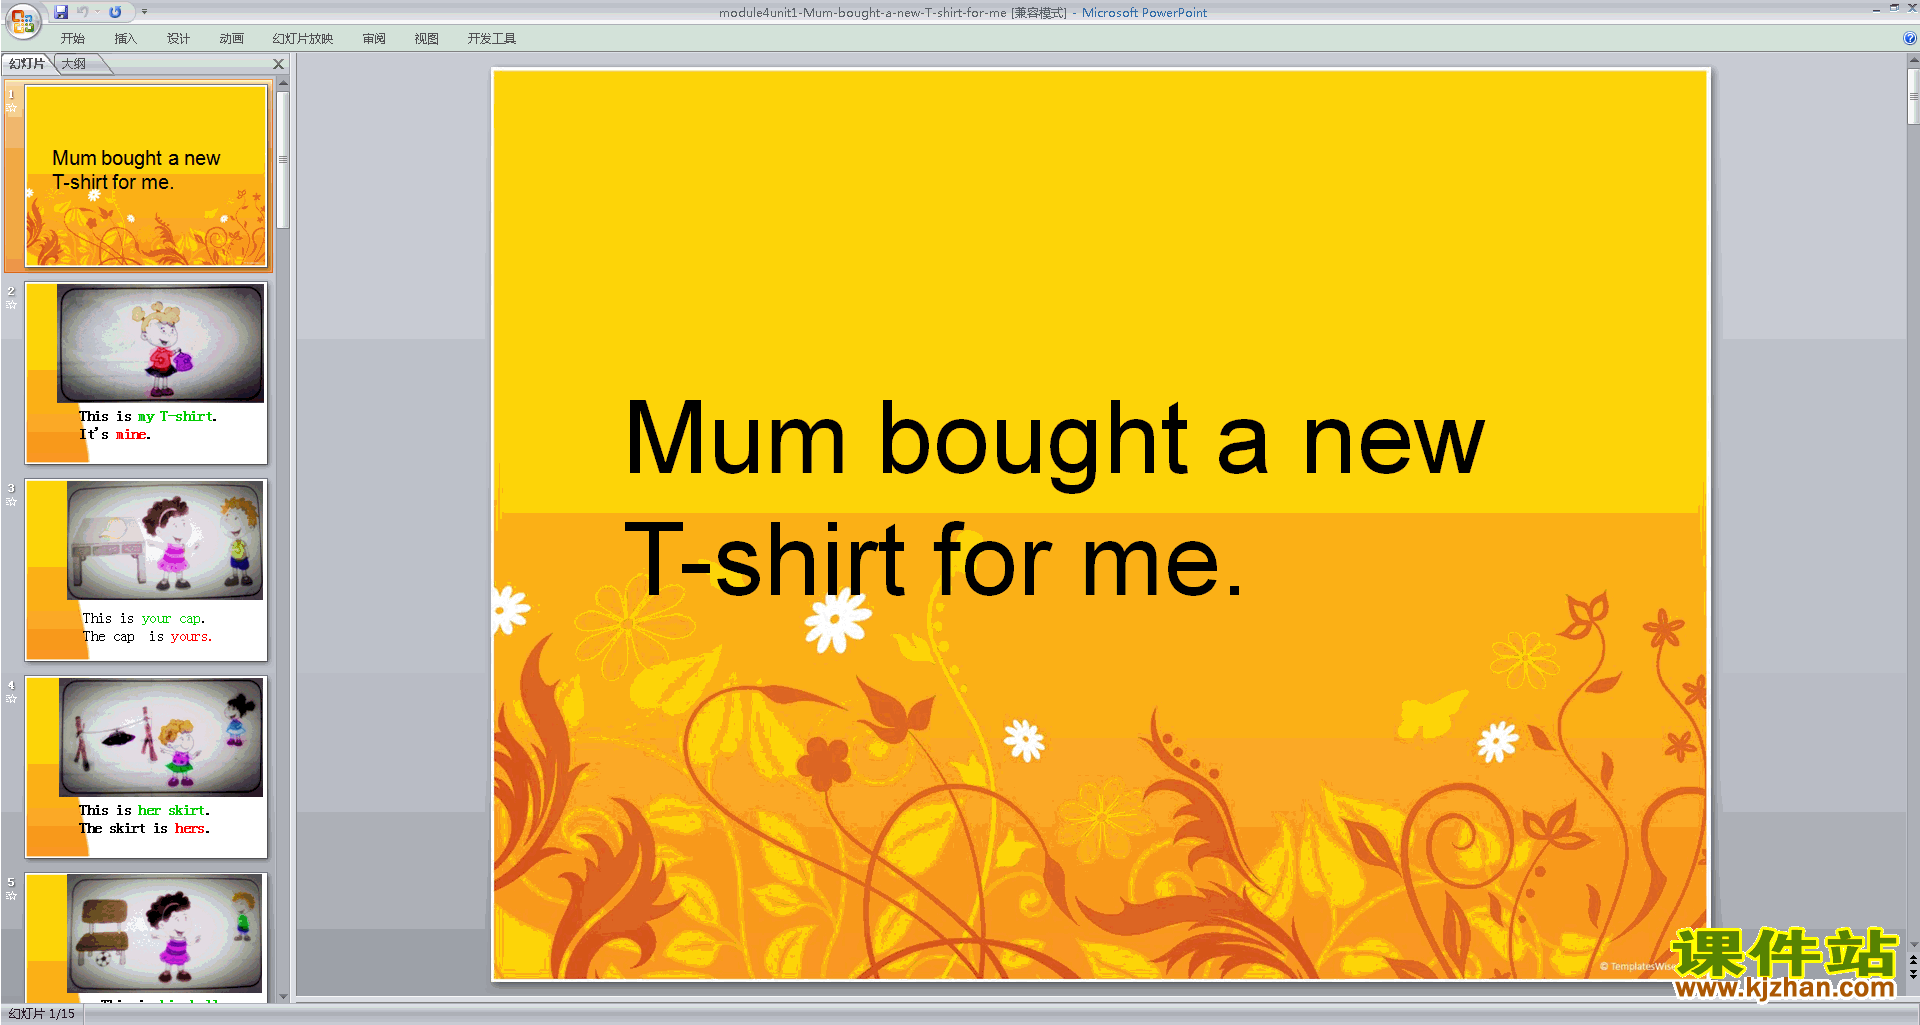 Module4 Unit1 Mum bought a new T-shirt for mepptμ6